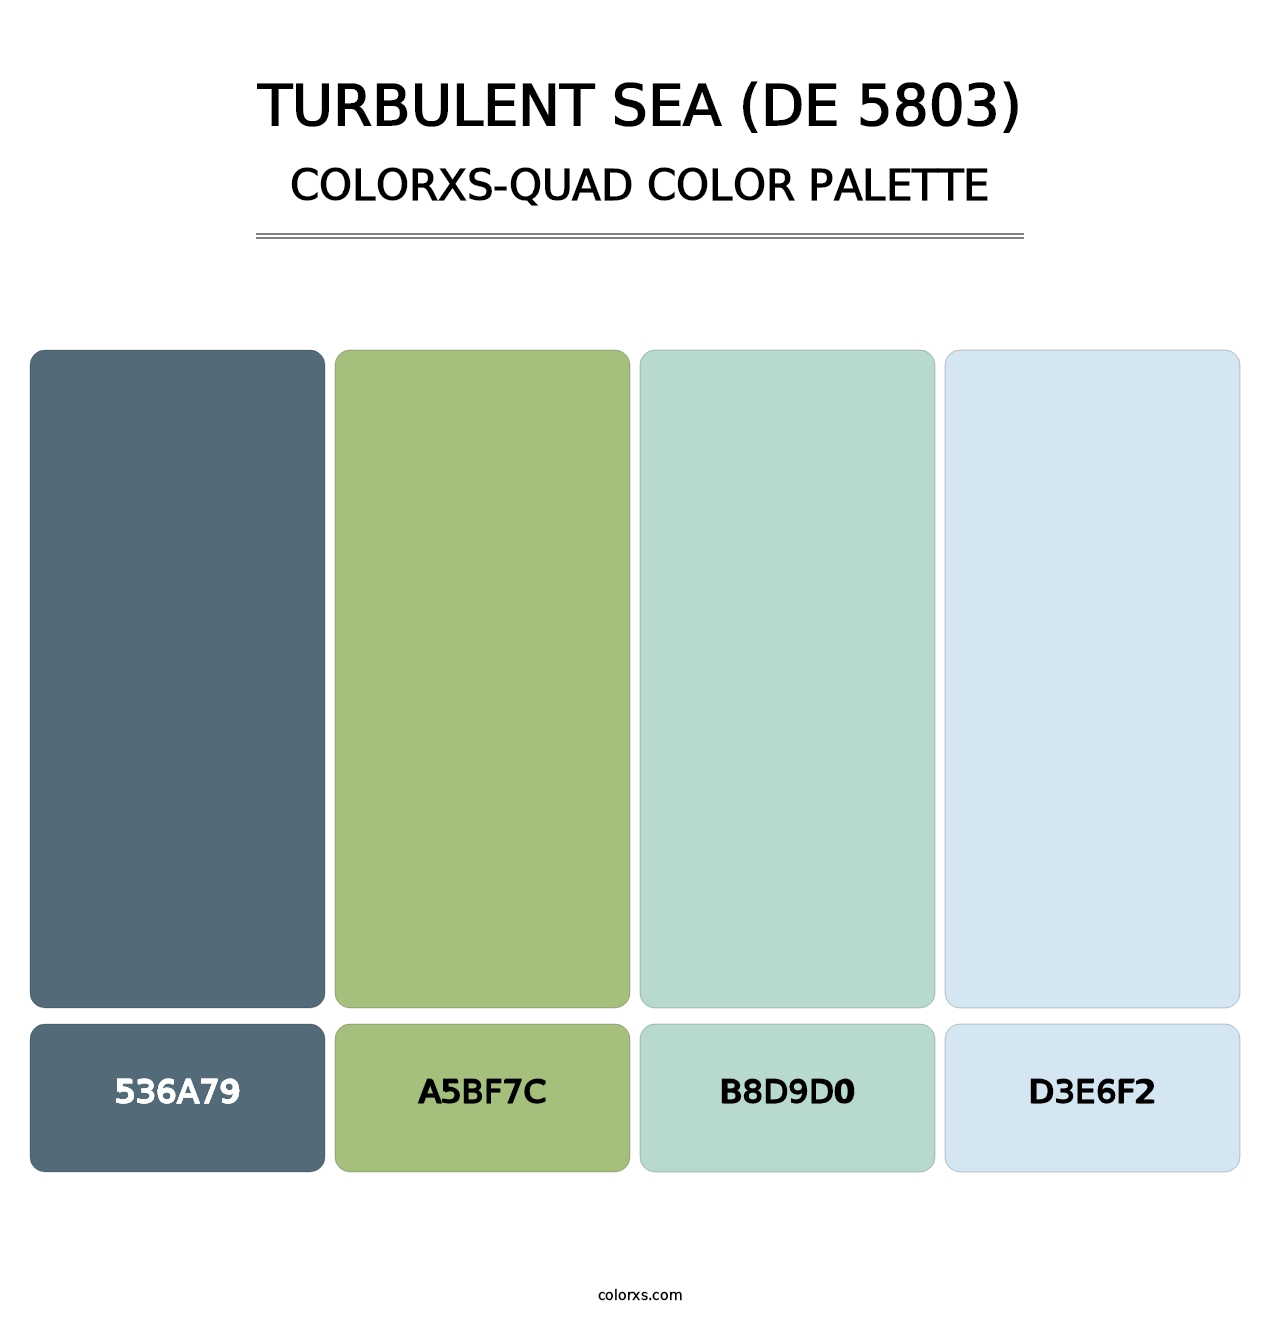 Turbulent Sea (DE 5803) - Colorxs Quad Palette